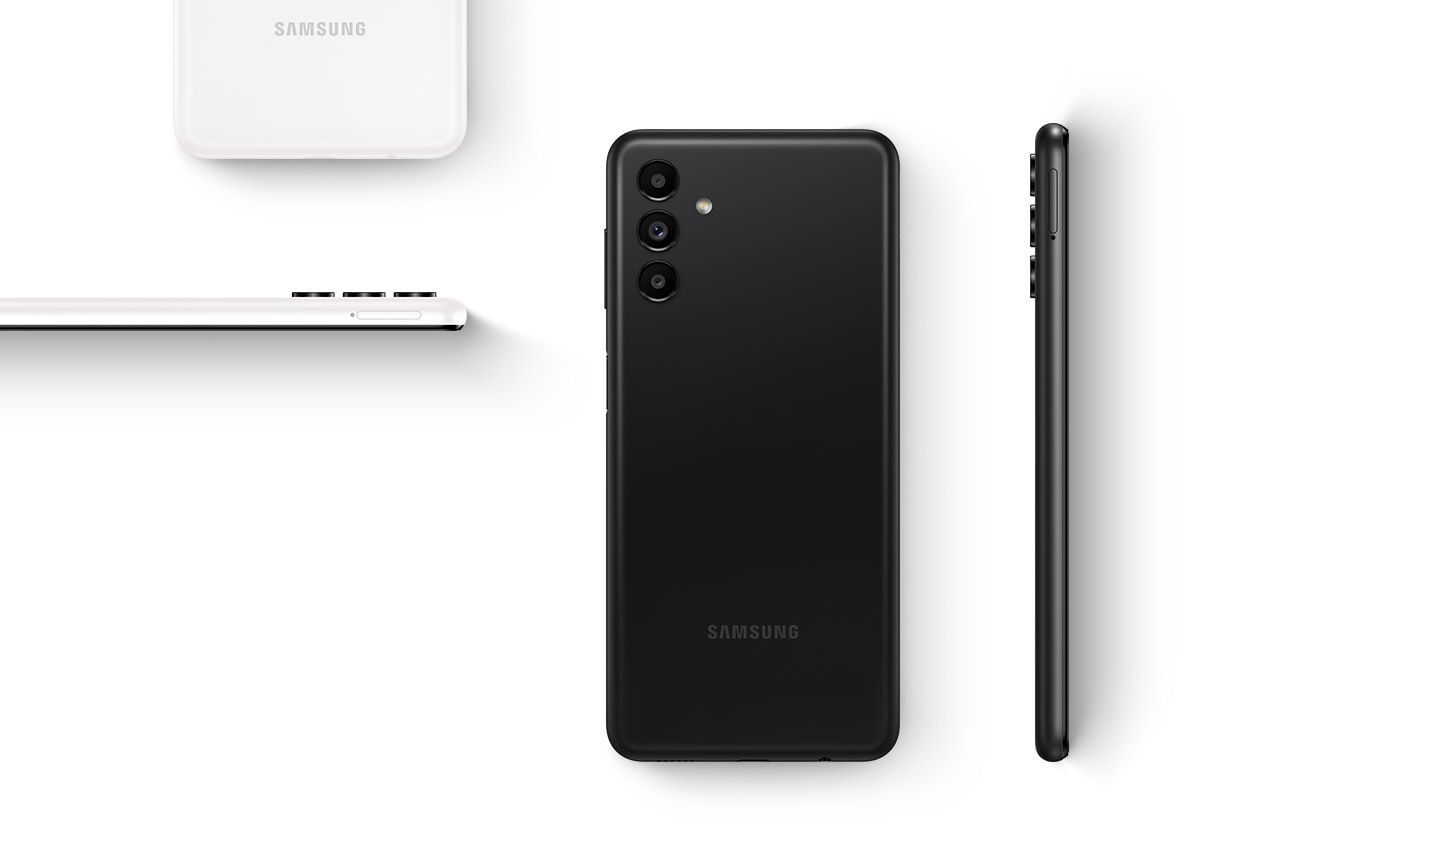 Verschiedene Galaxy A13 5G-Geräte sind in unterschiedlichen Positionen platziert, um das Gerät von hinten und von der Seite zu zeigen. Die Geräte sind in den Farben Schwarz und Weiß gehalten.